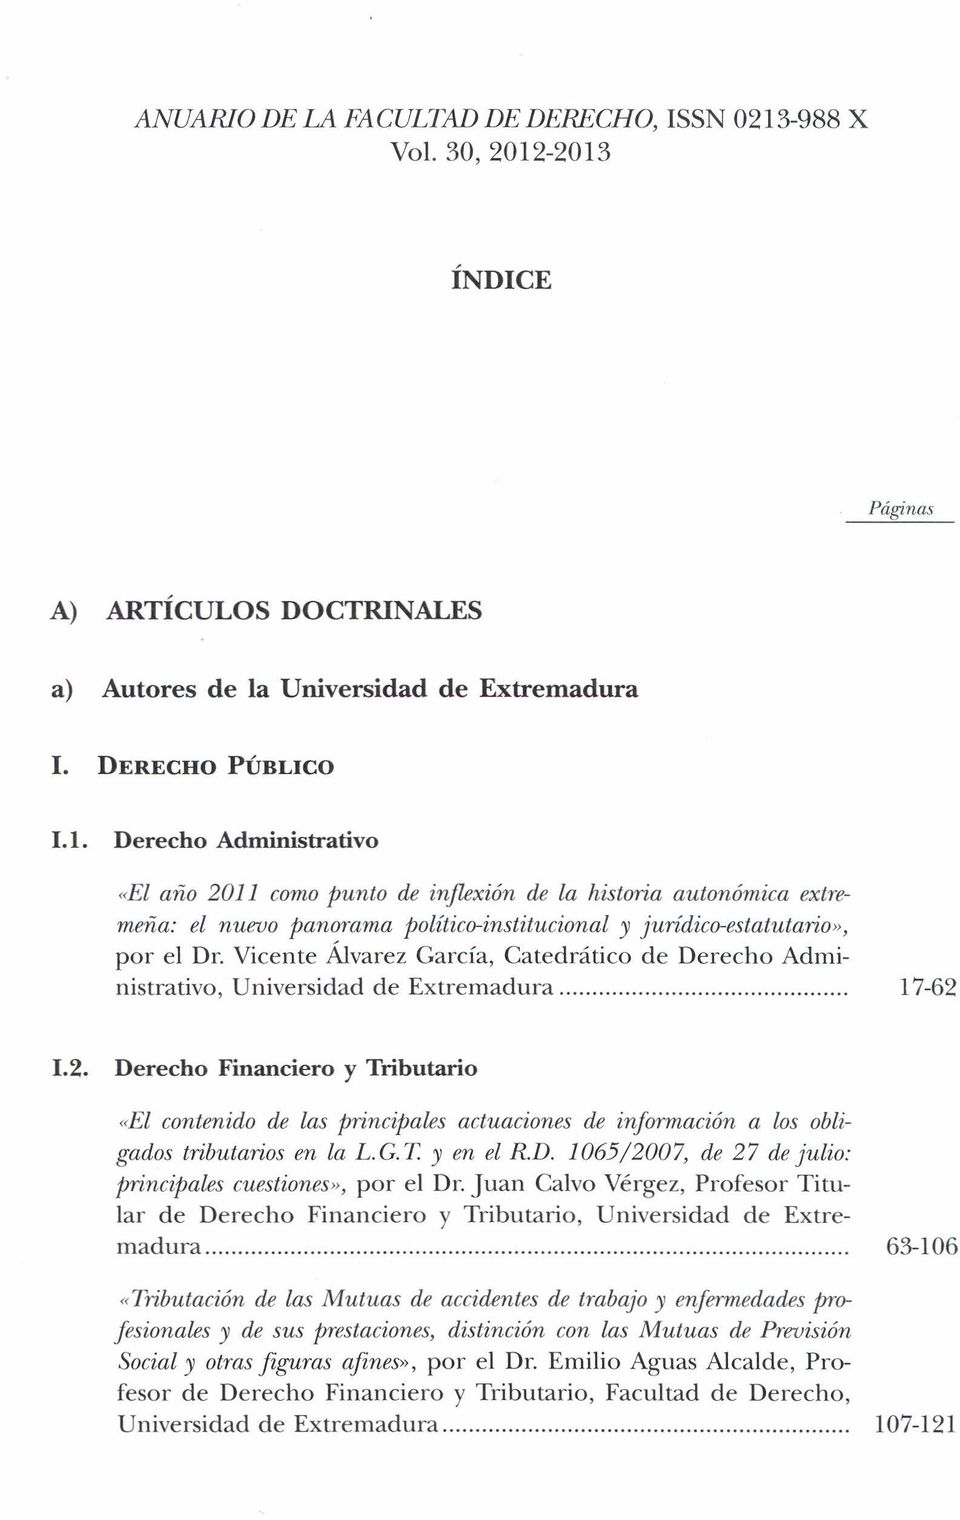 Vicente Álvarez Carcía, Catedrático de Derecho Administrativo, Universidad de Extremadura. 17-62 